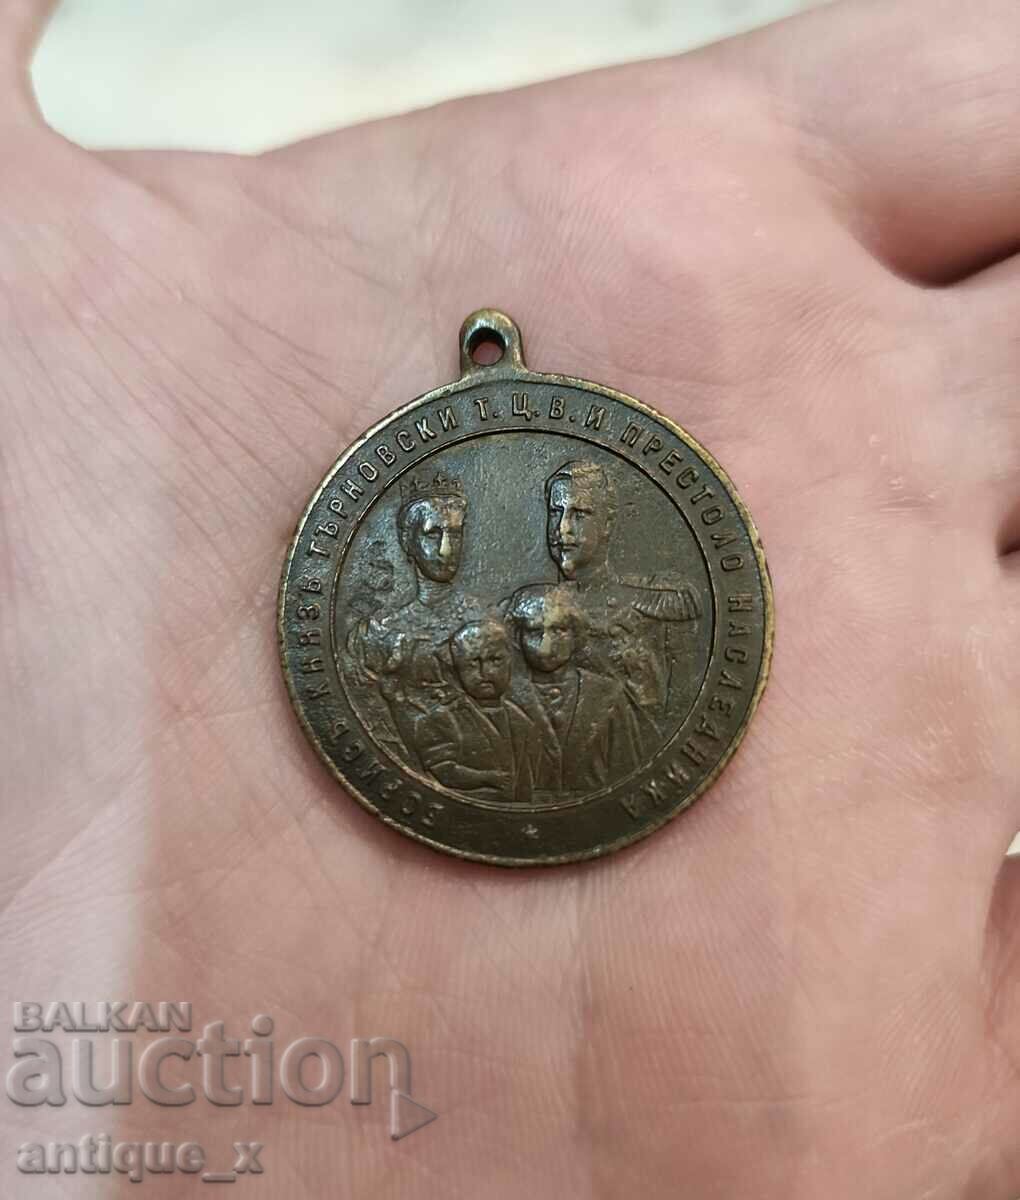 Πριγκιπικό αναμνηστικό μετάλλιο για το θάνατο της Μαρίας Λουίζας